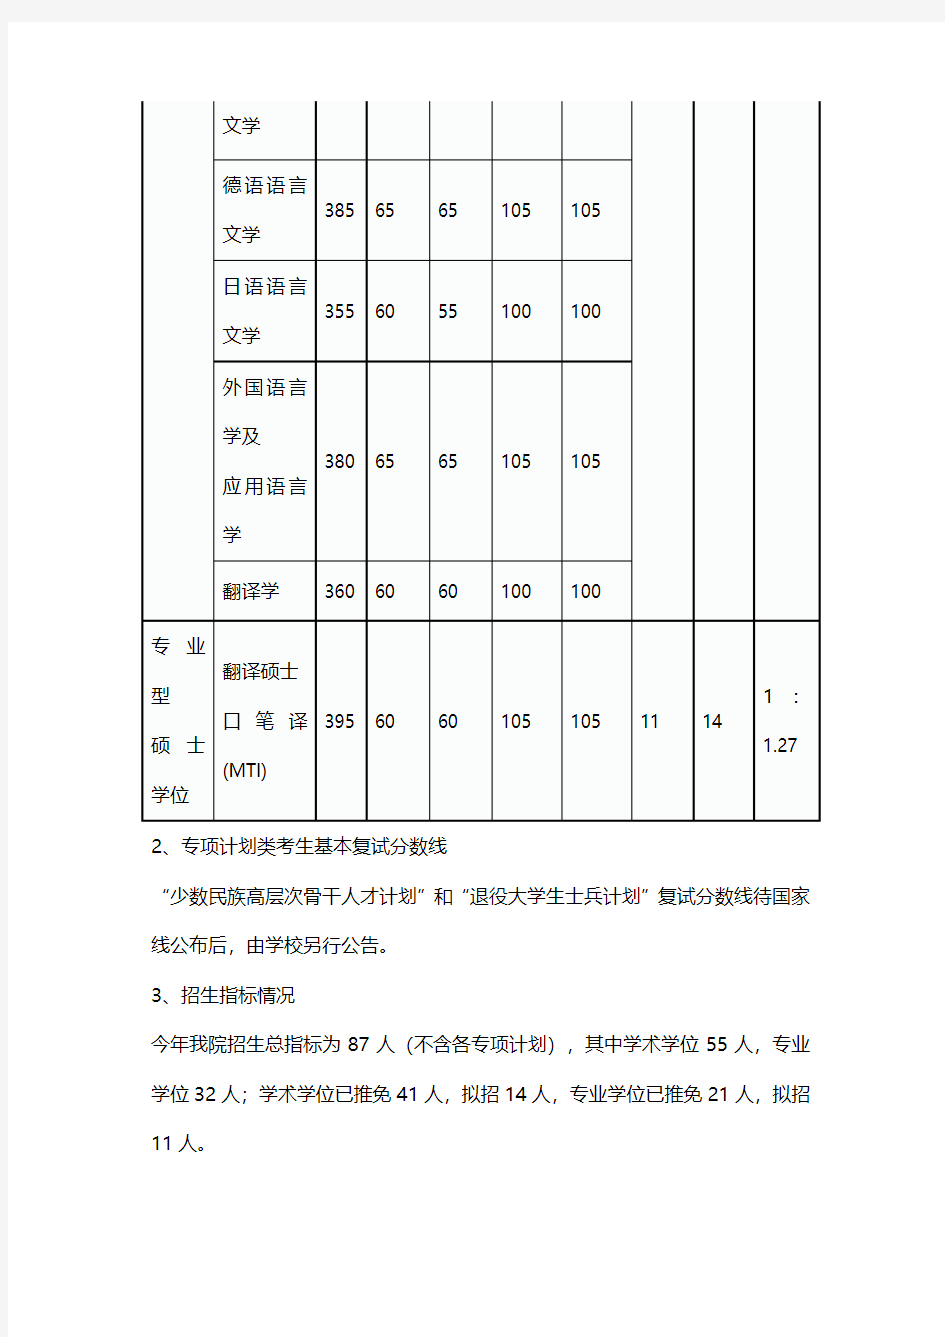 2019武汉大学外语学院硕士研究生 复试录取工作实施细则及复试名单